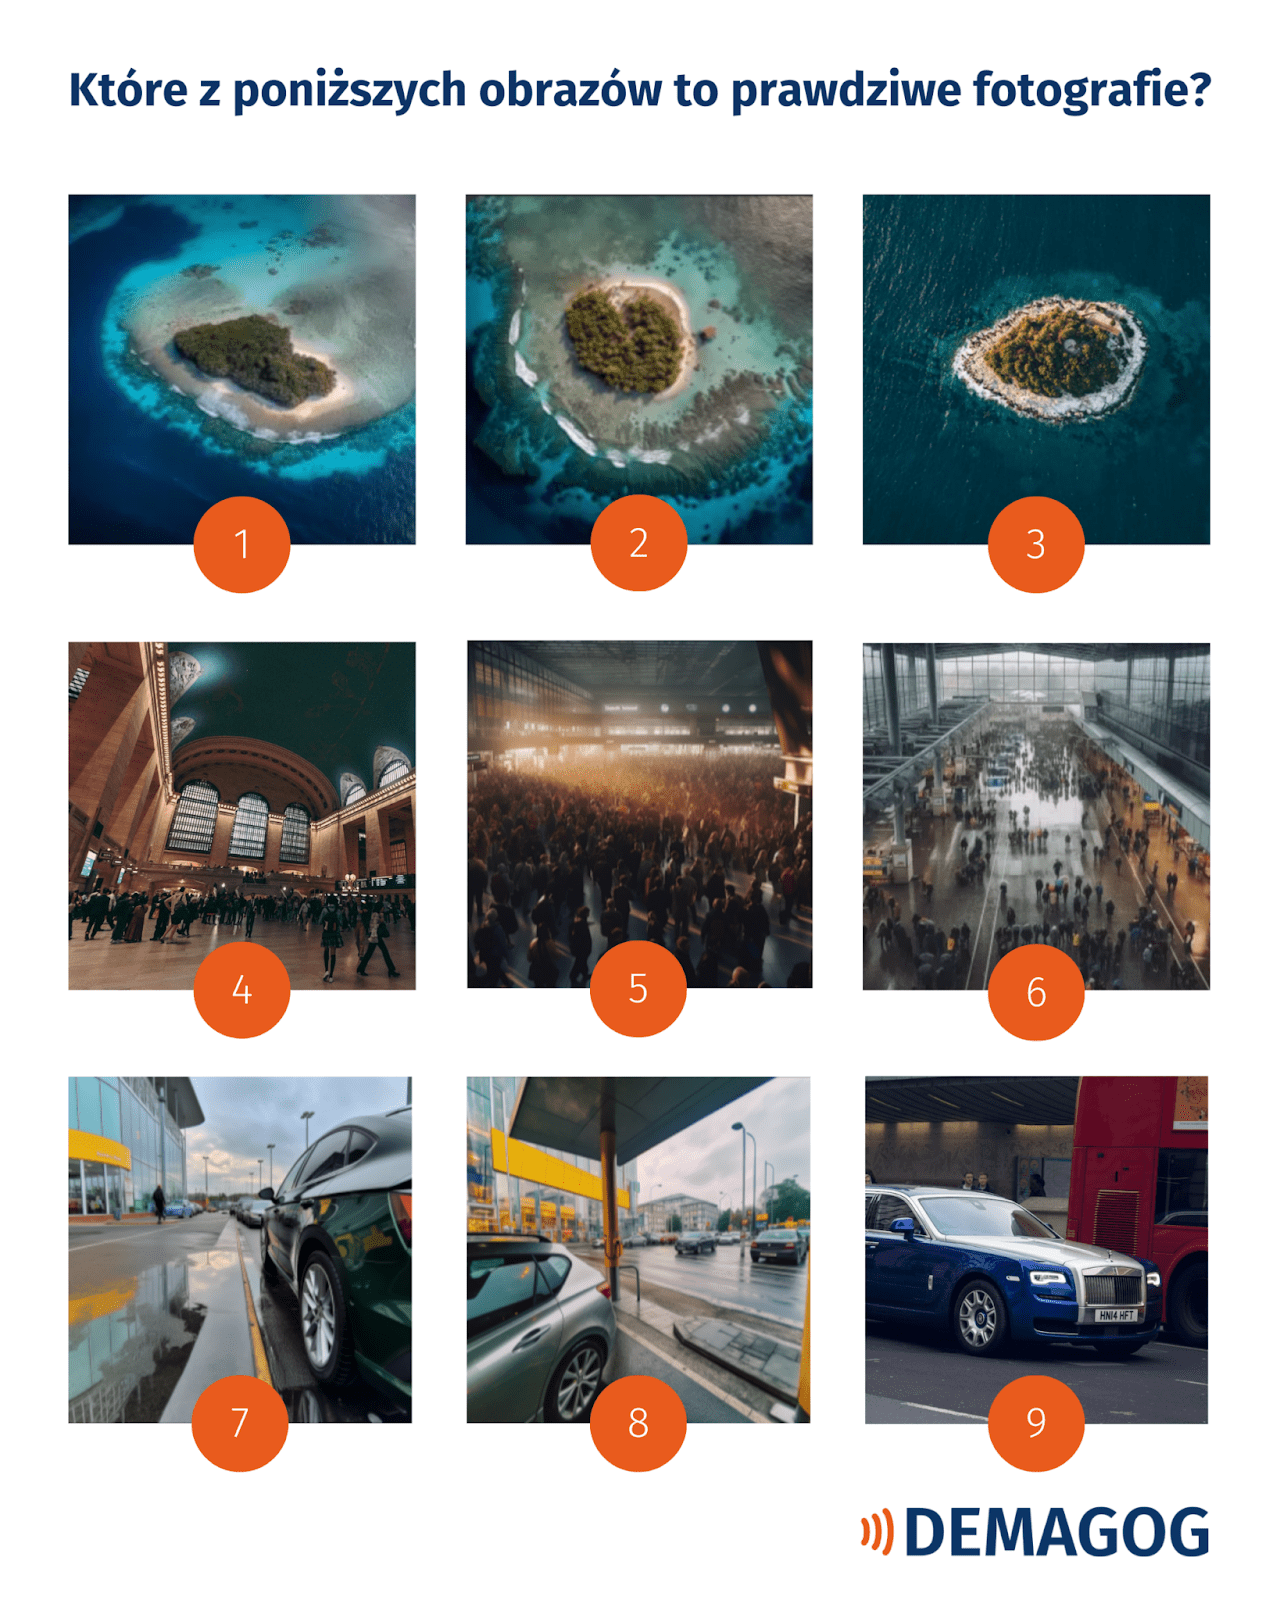 Zadanie specjalne dla czytelników Demagoga. Na grafice umieszczono 9 obrazów, spośród których tylko 3 to prawdziwe zdjęcia. Pozostałe zostały wygenerowane przez AI.